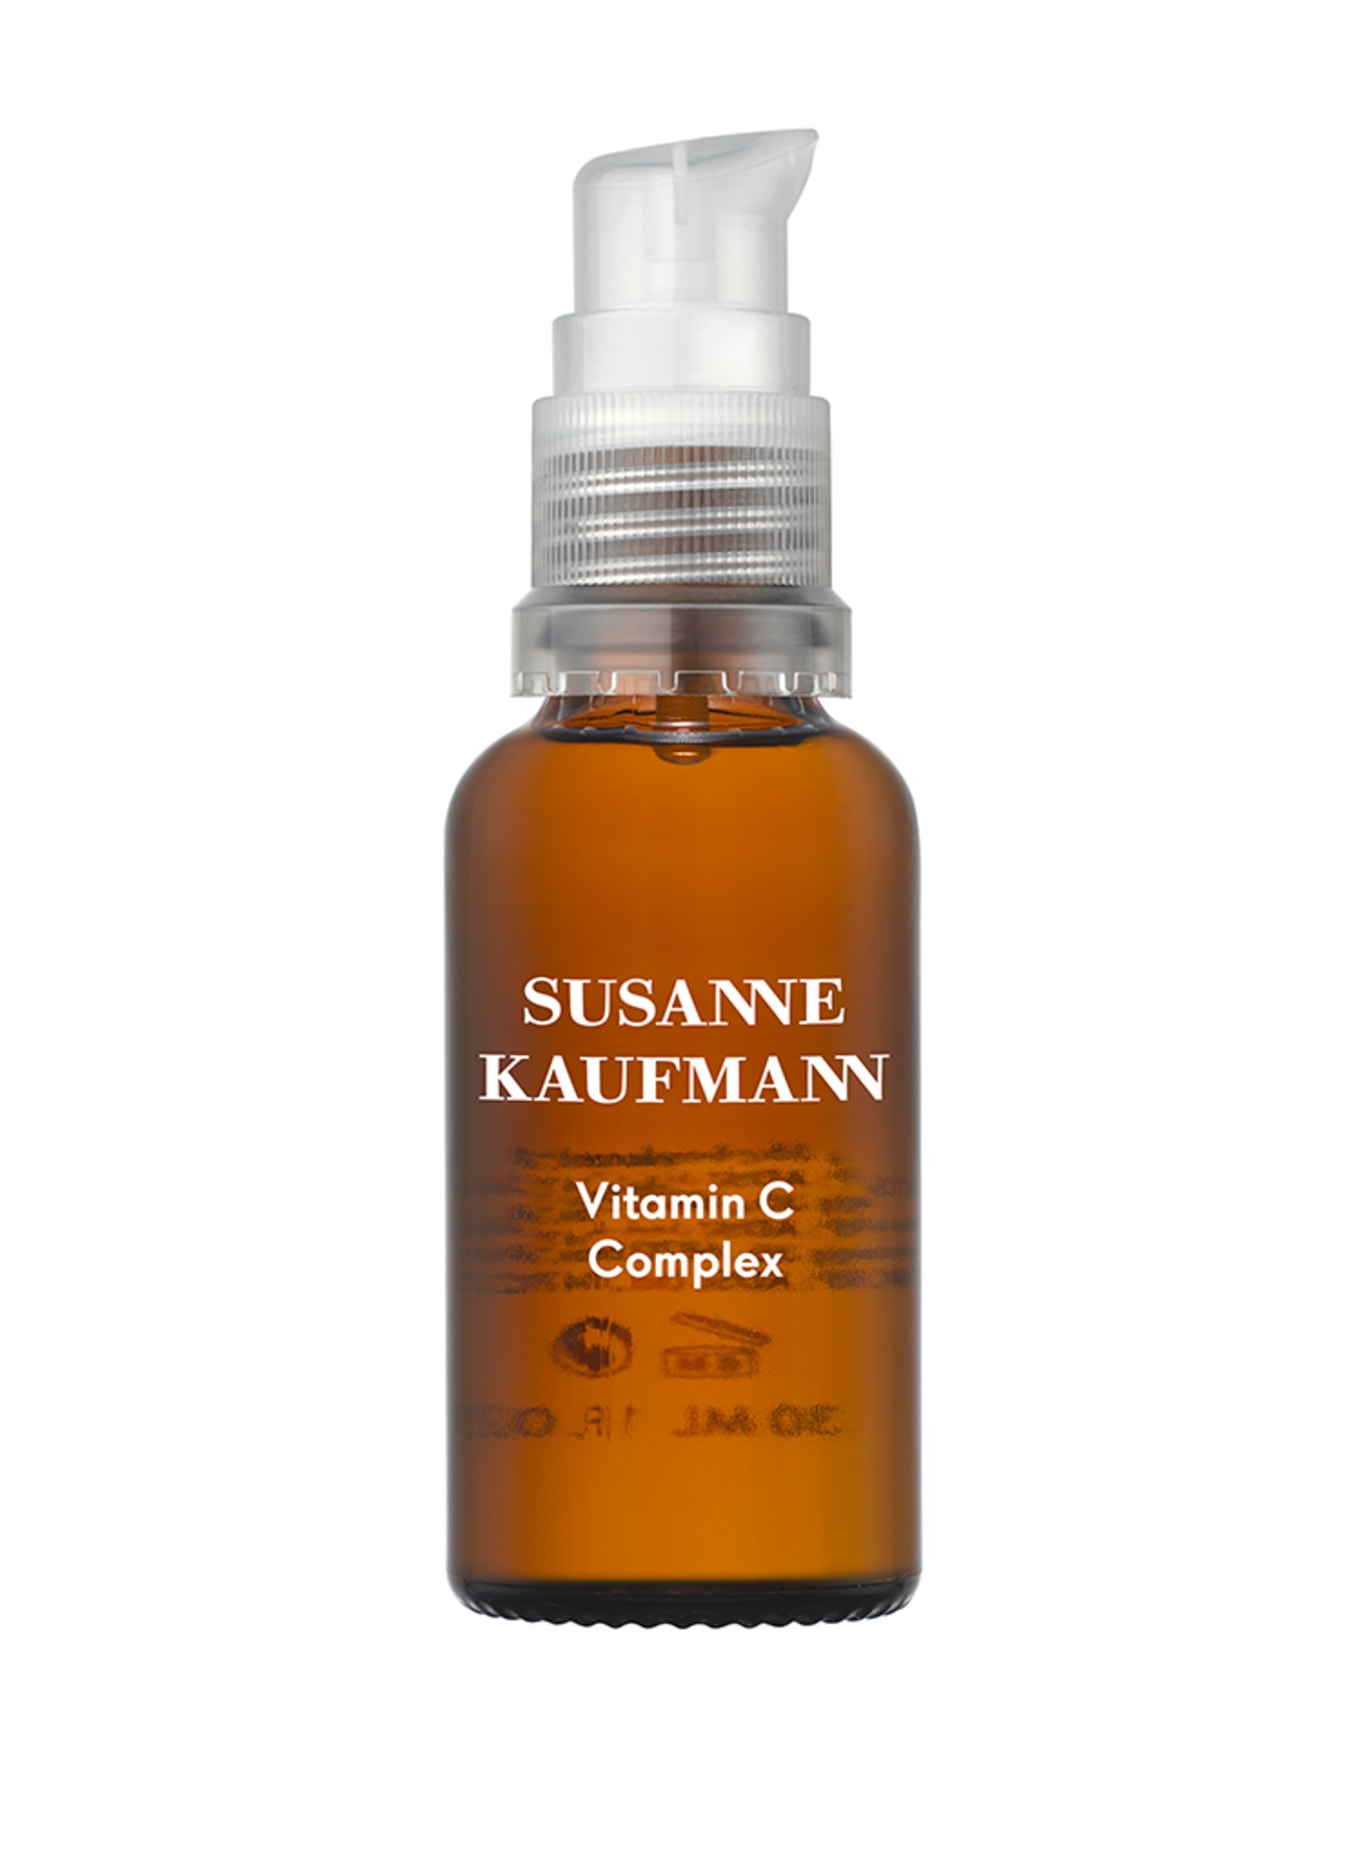 SUSANNE KAUFMANN VITAMIN C COMPLEX (Bild 1)